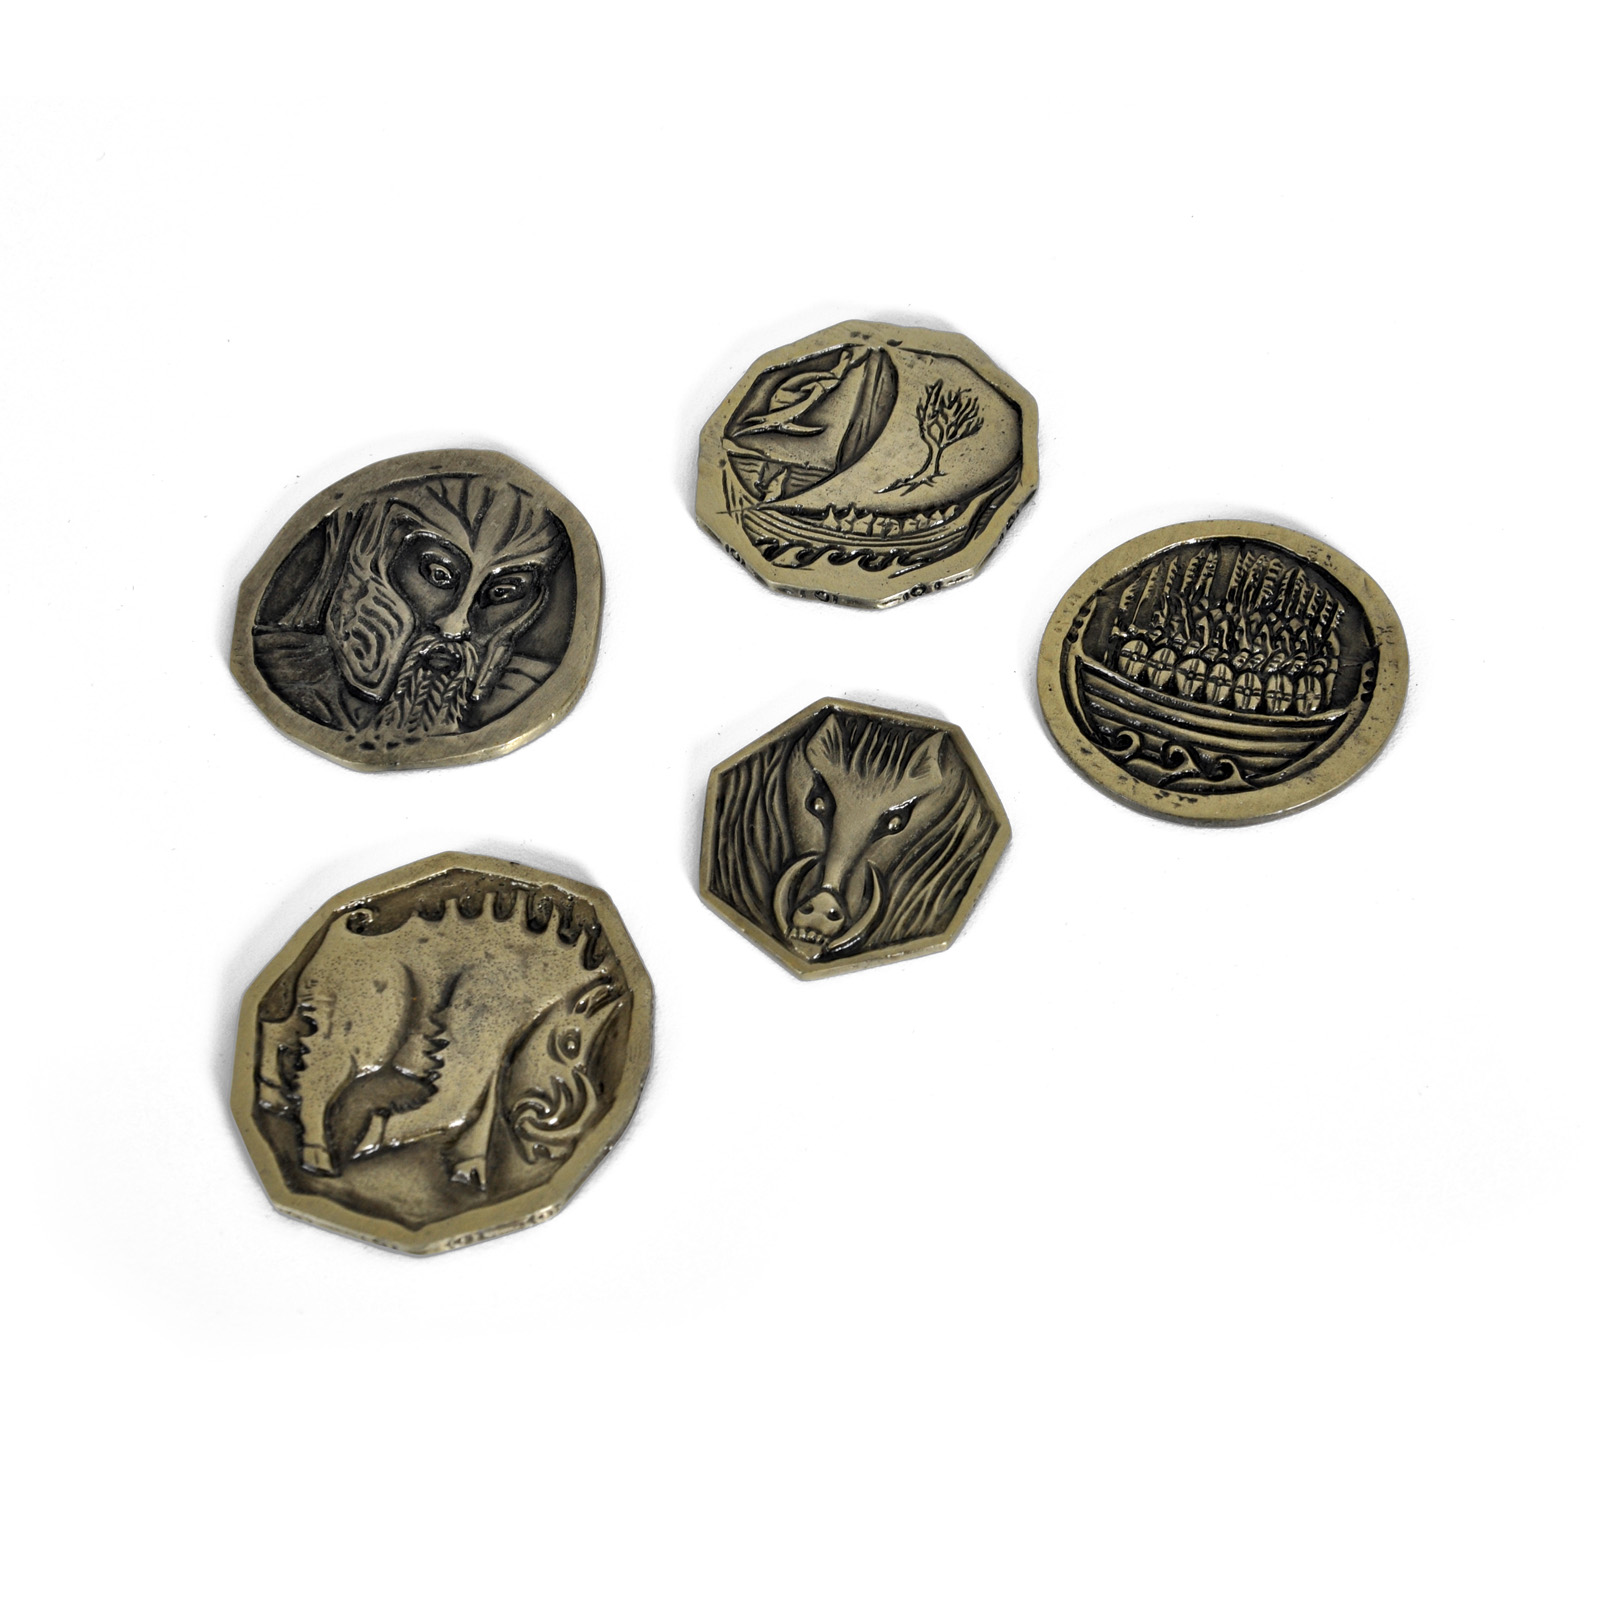 Hobbit - Smaugs Schatz Zwergen Münzen Set